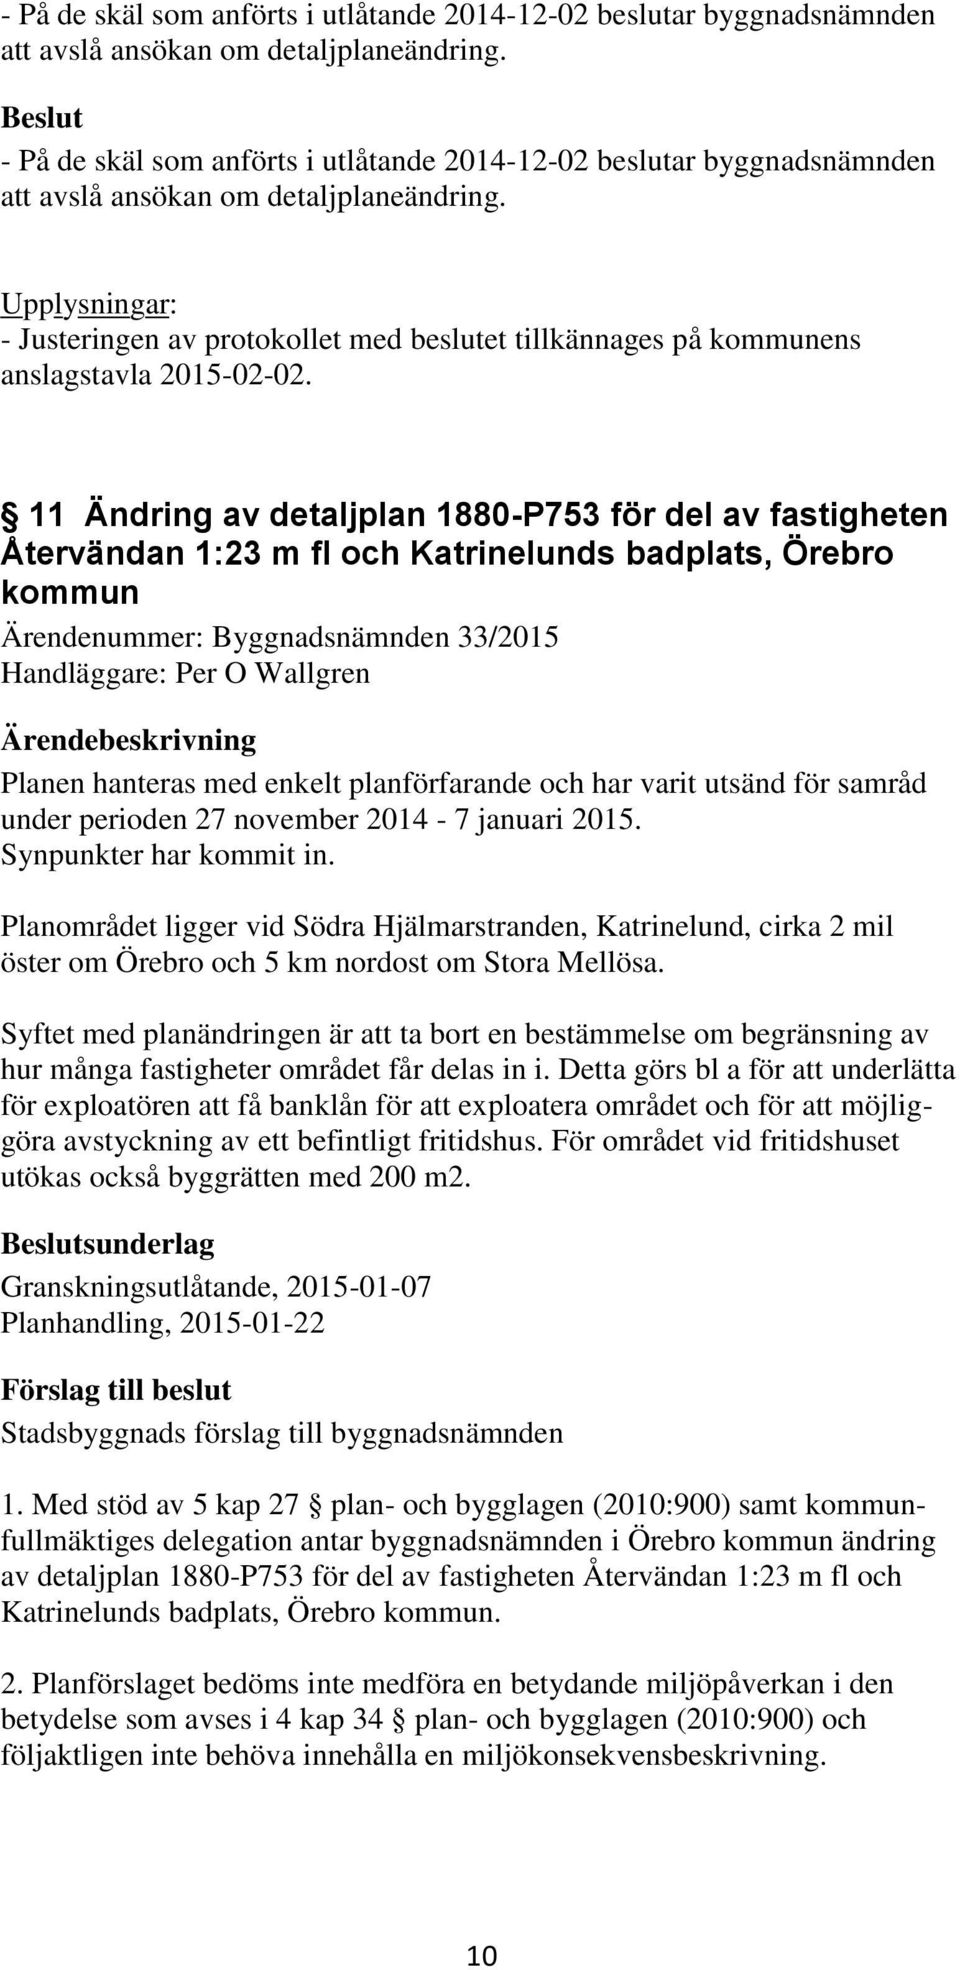 11 Ändring av detaljplan 1880-P753 för del av fastigheten Återvändan 1:23 m fl och Katrinelunds badplats, Örebro kommun Ärendenummer: Byggnadsnämnden 33/2015 Handläggare: Per O Wallgren Planen